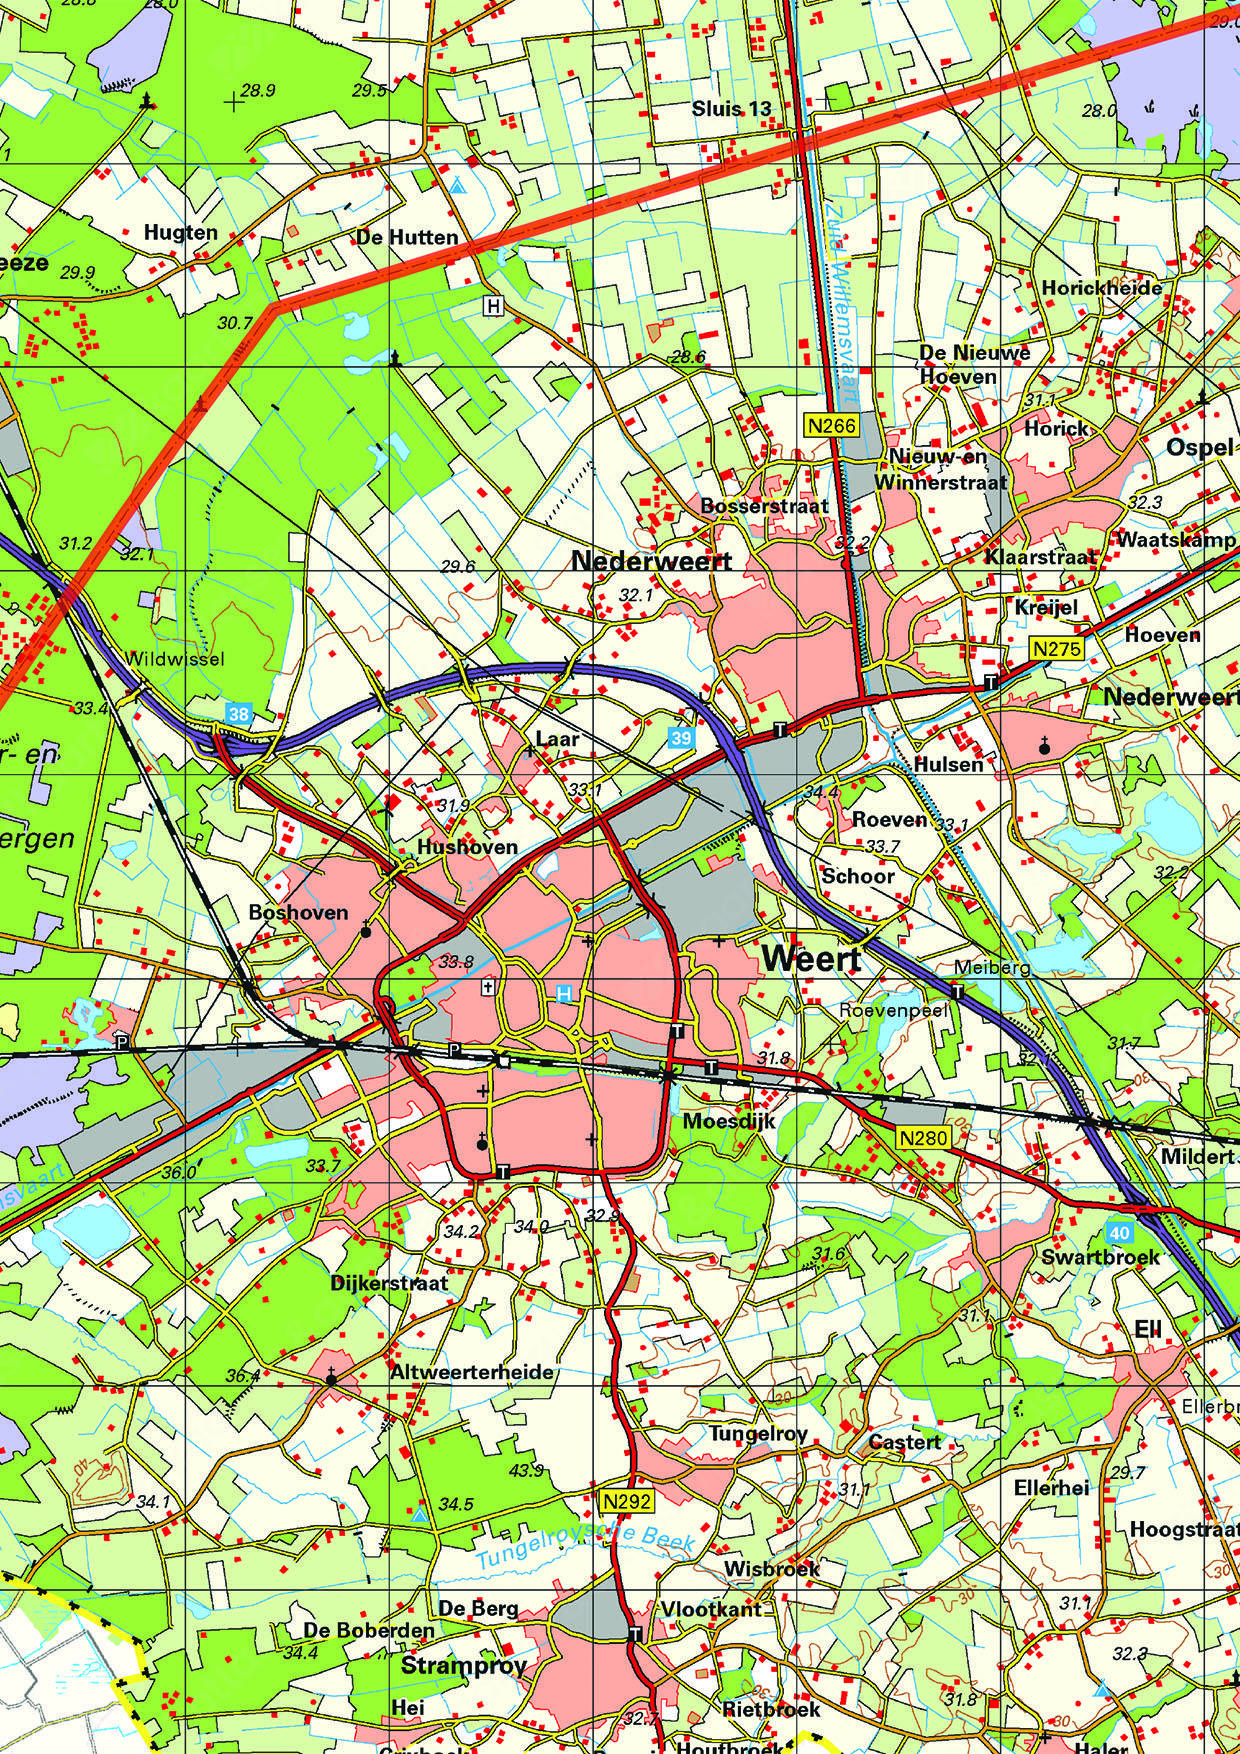 Topografische kaart Limburg 1:100.000